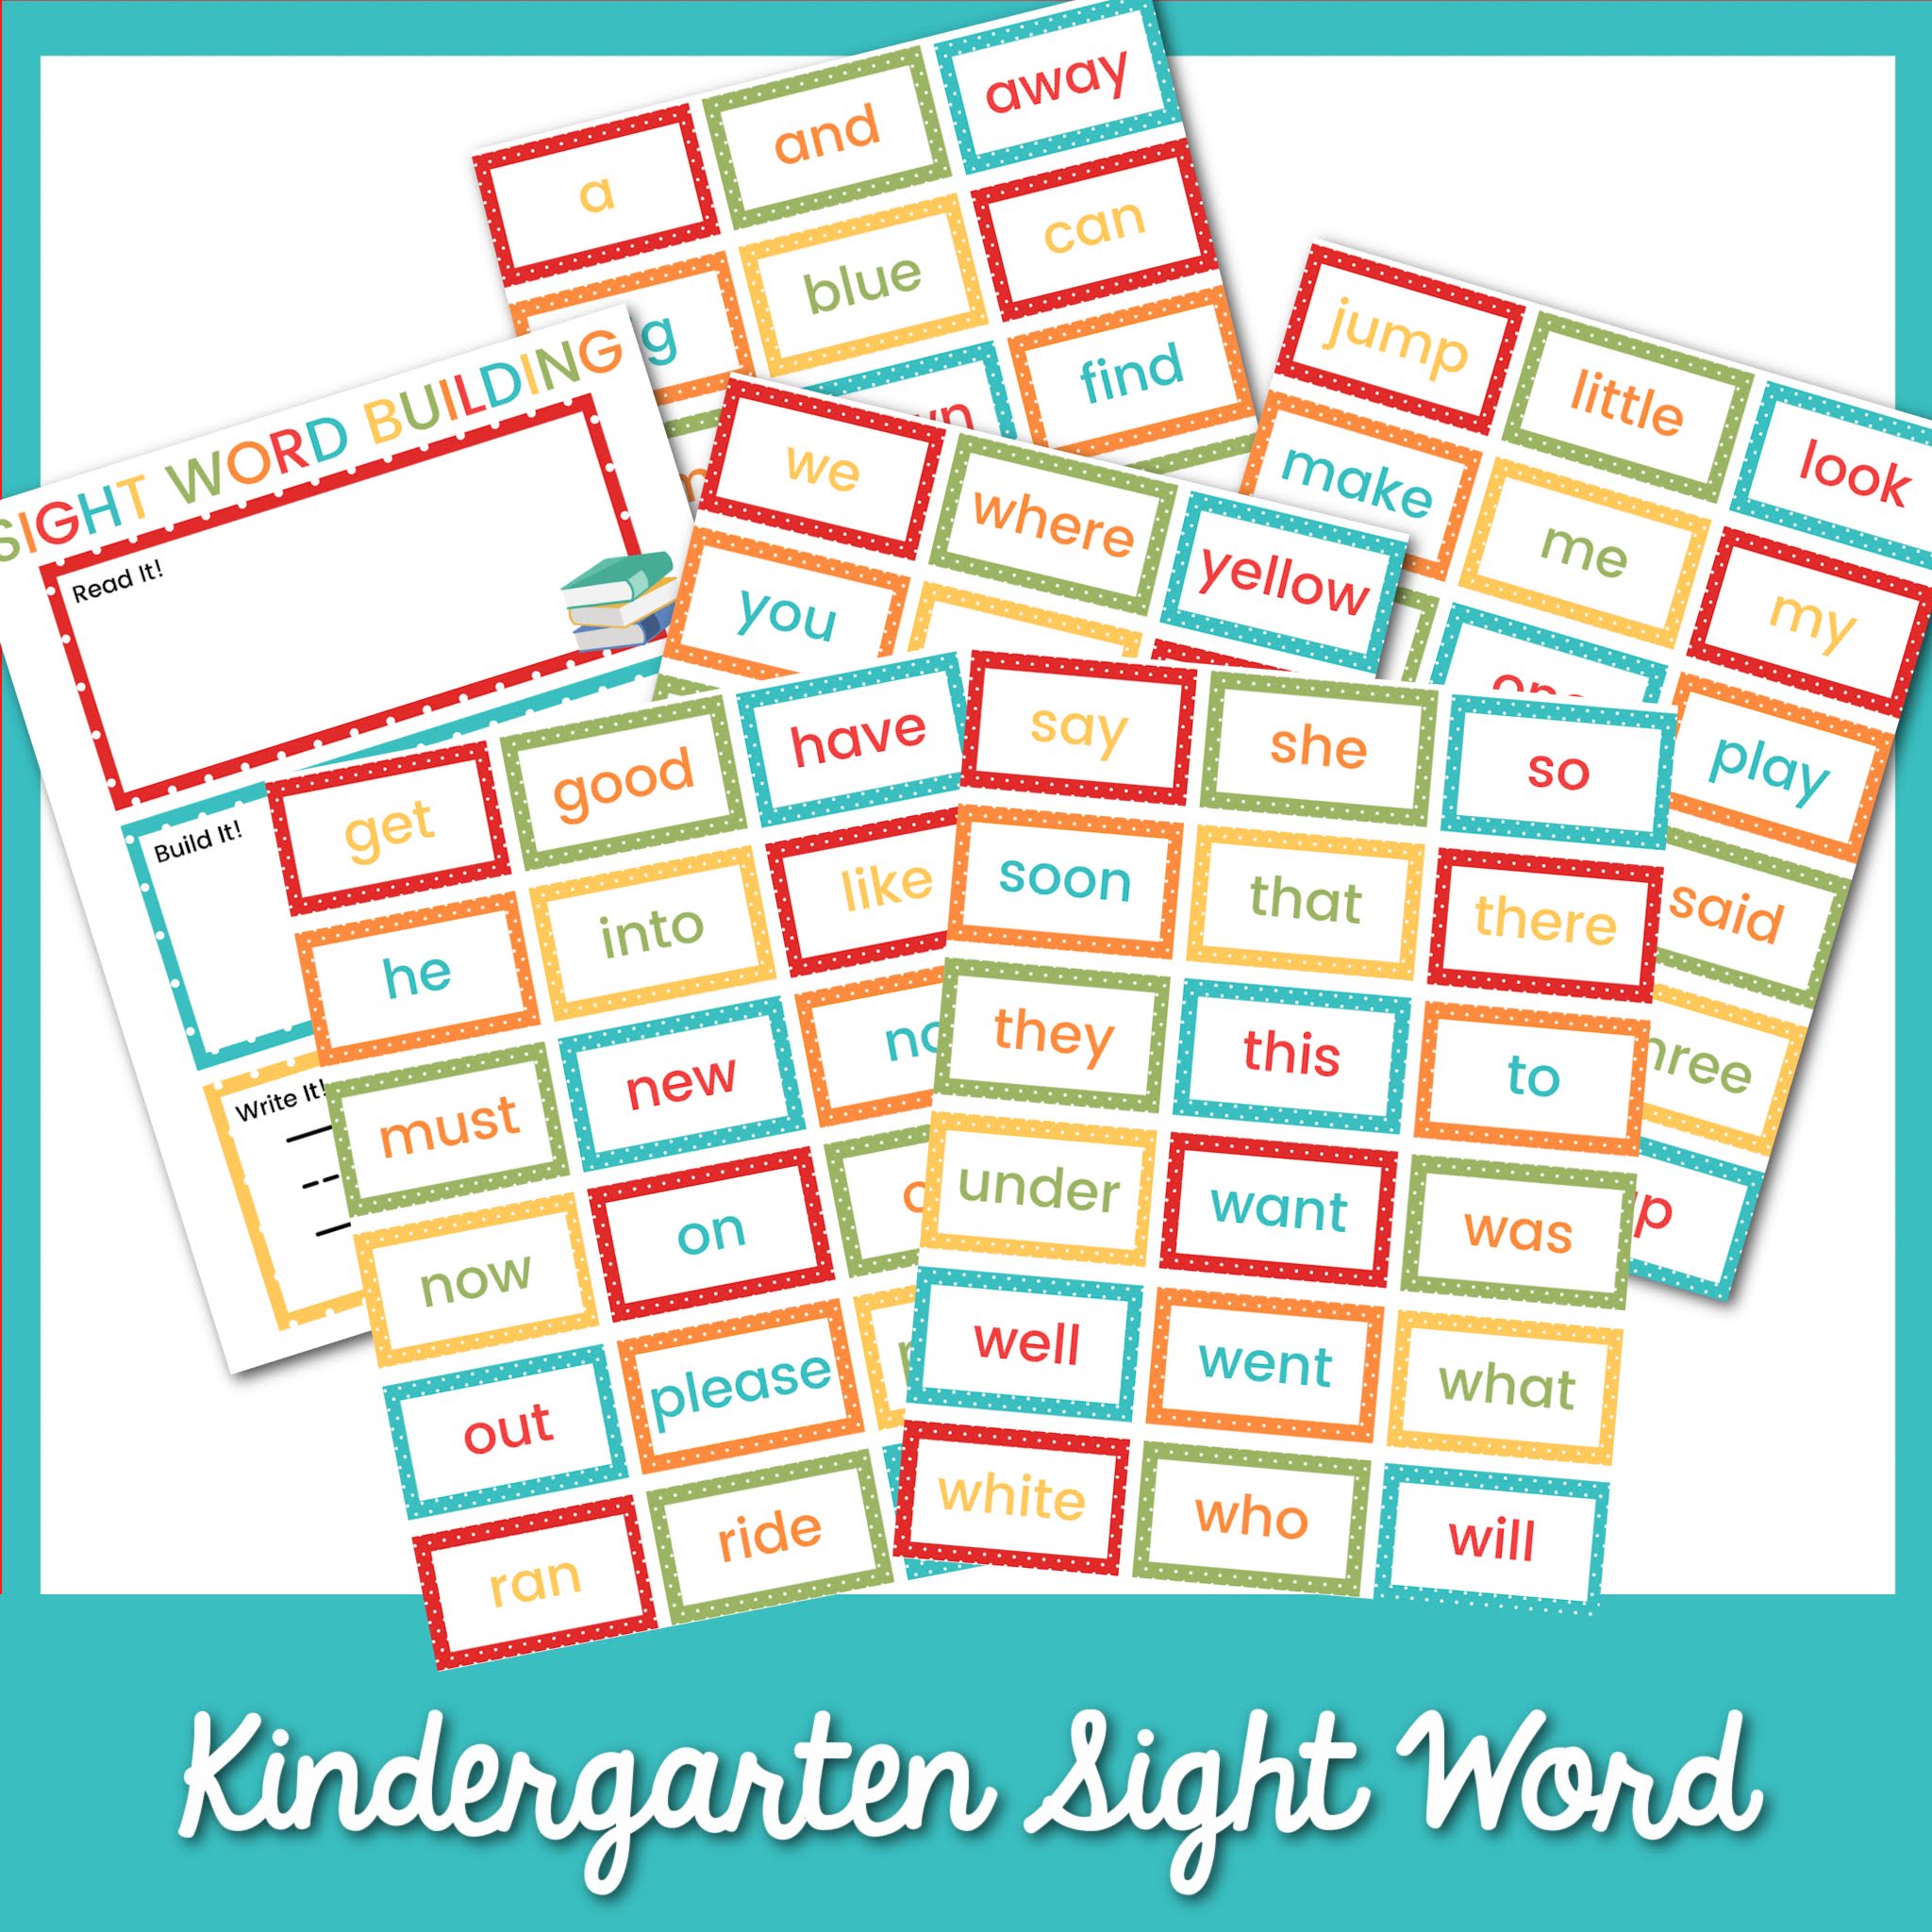 Kindergarten Sight Word Building